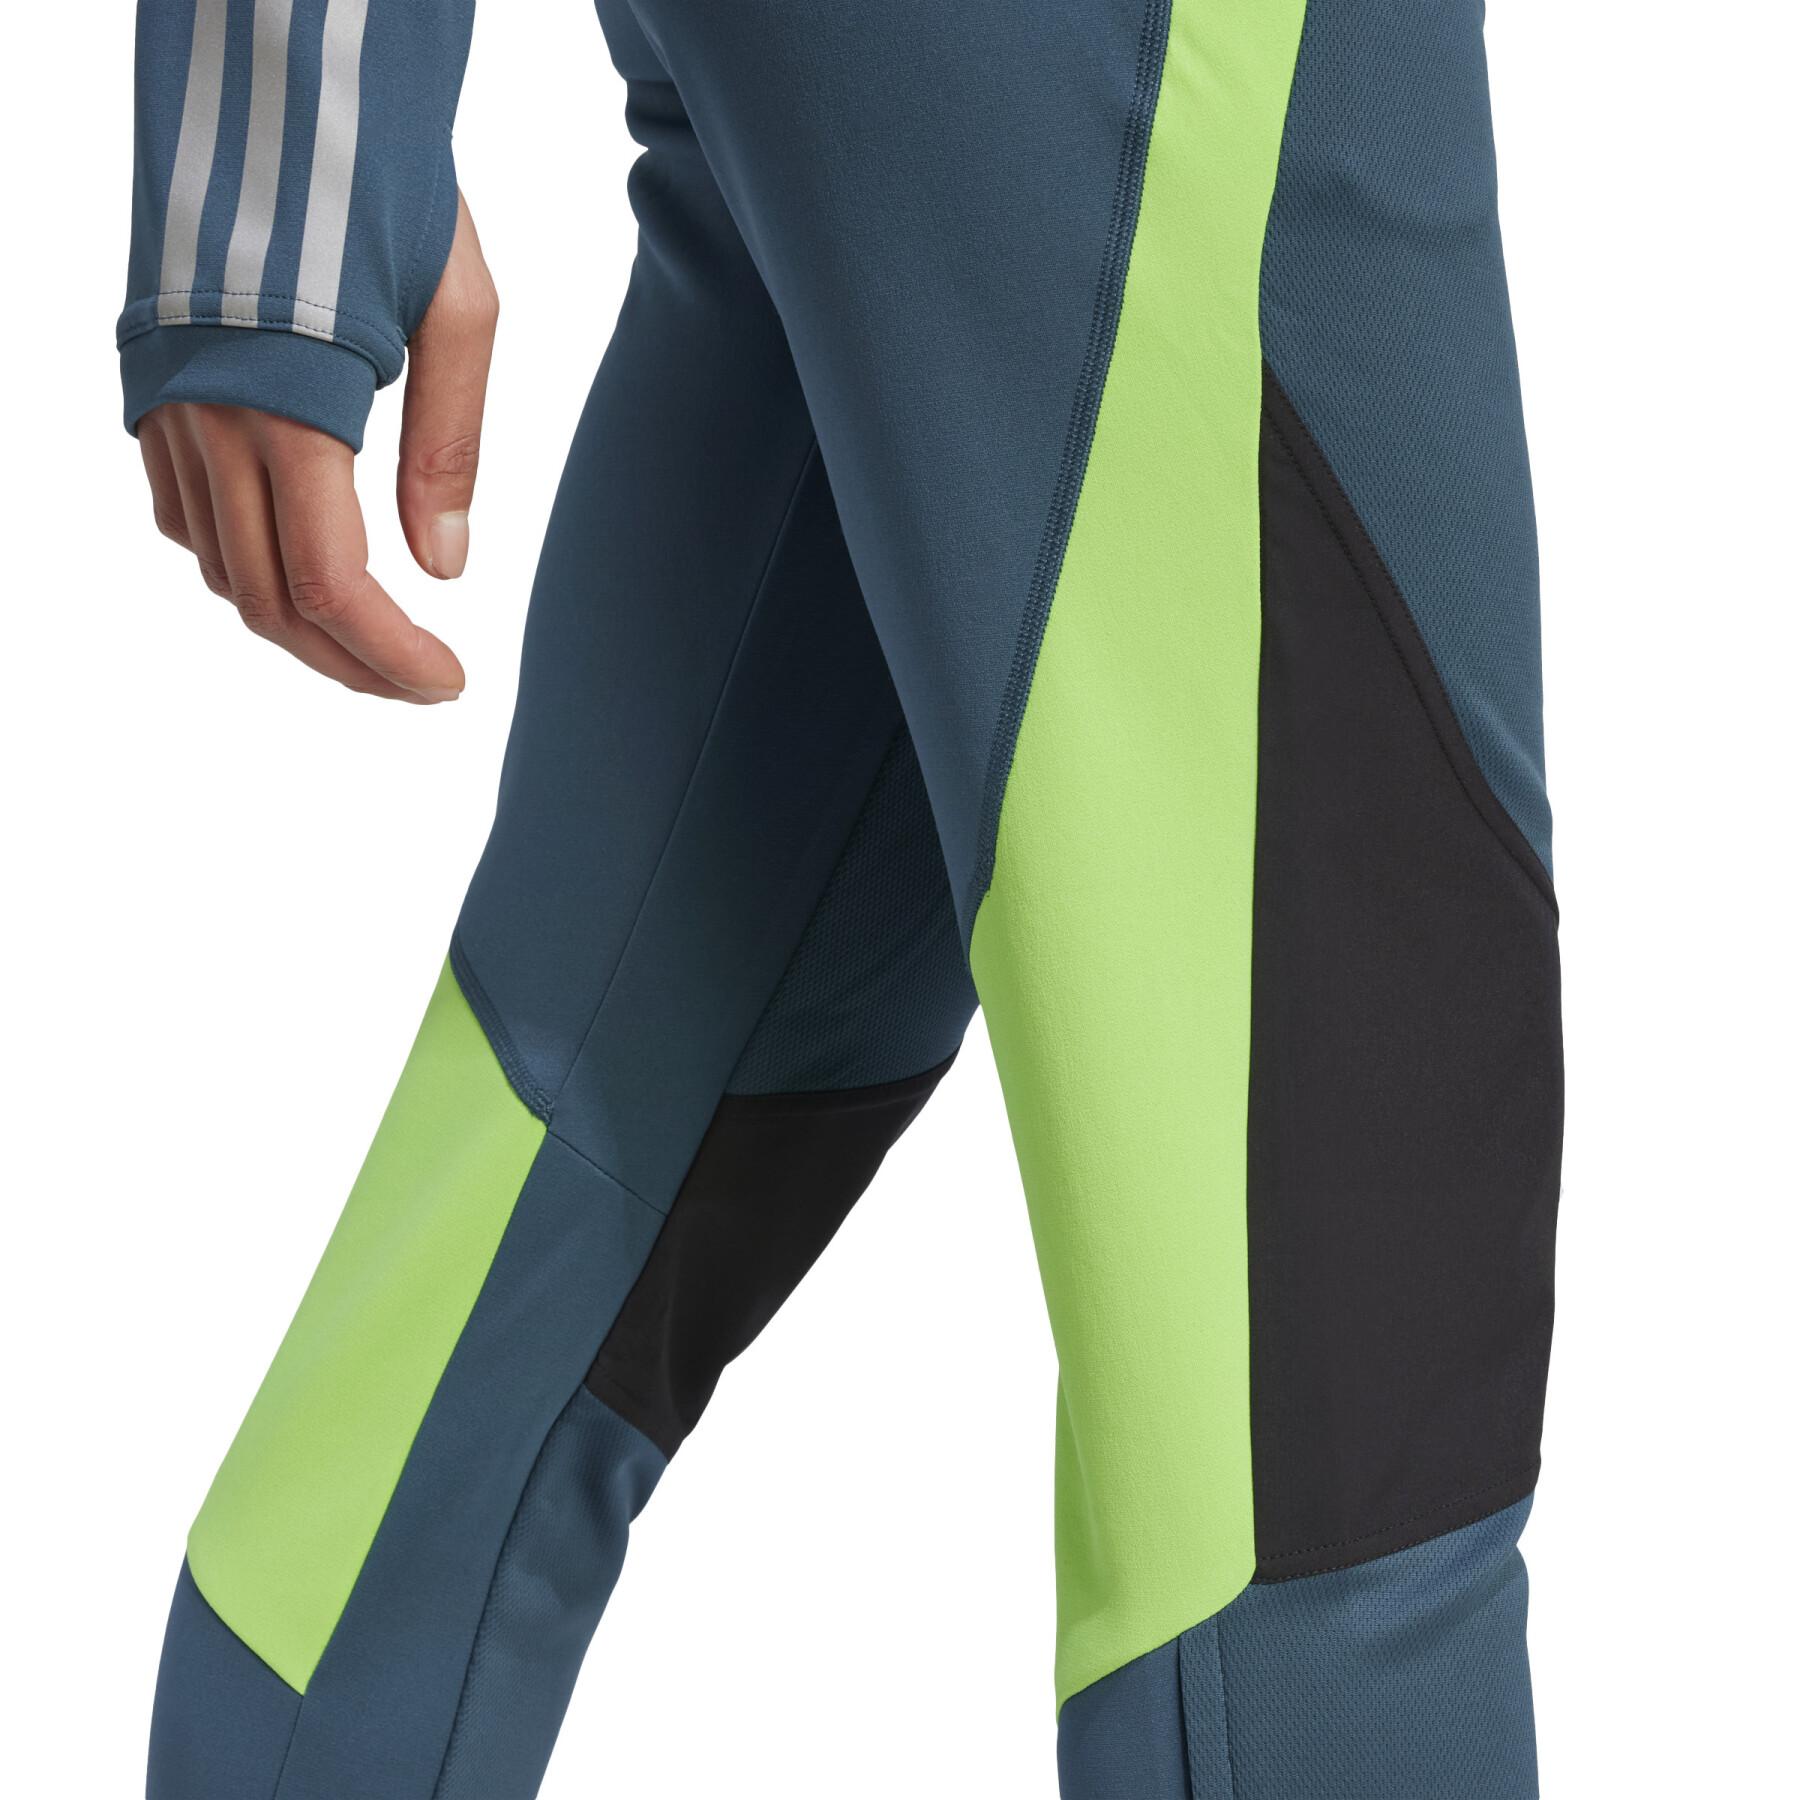 Pantalón de jogging competición femenina adidas Tiro23